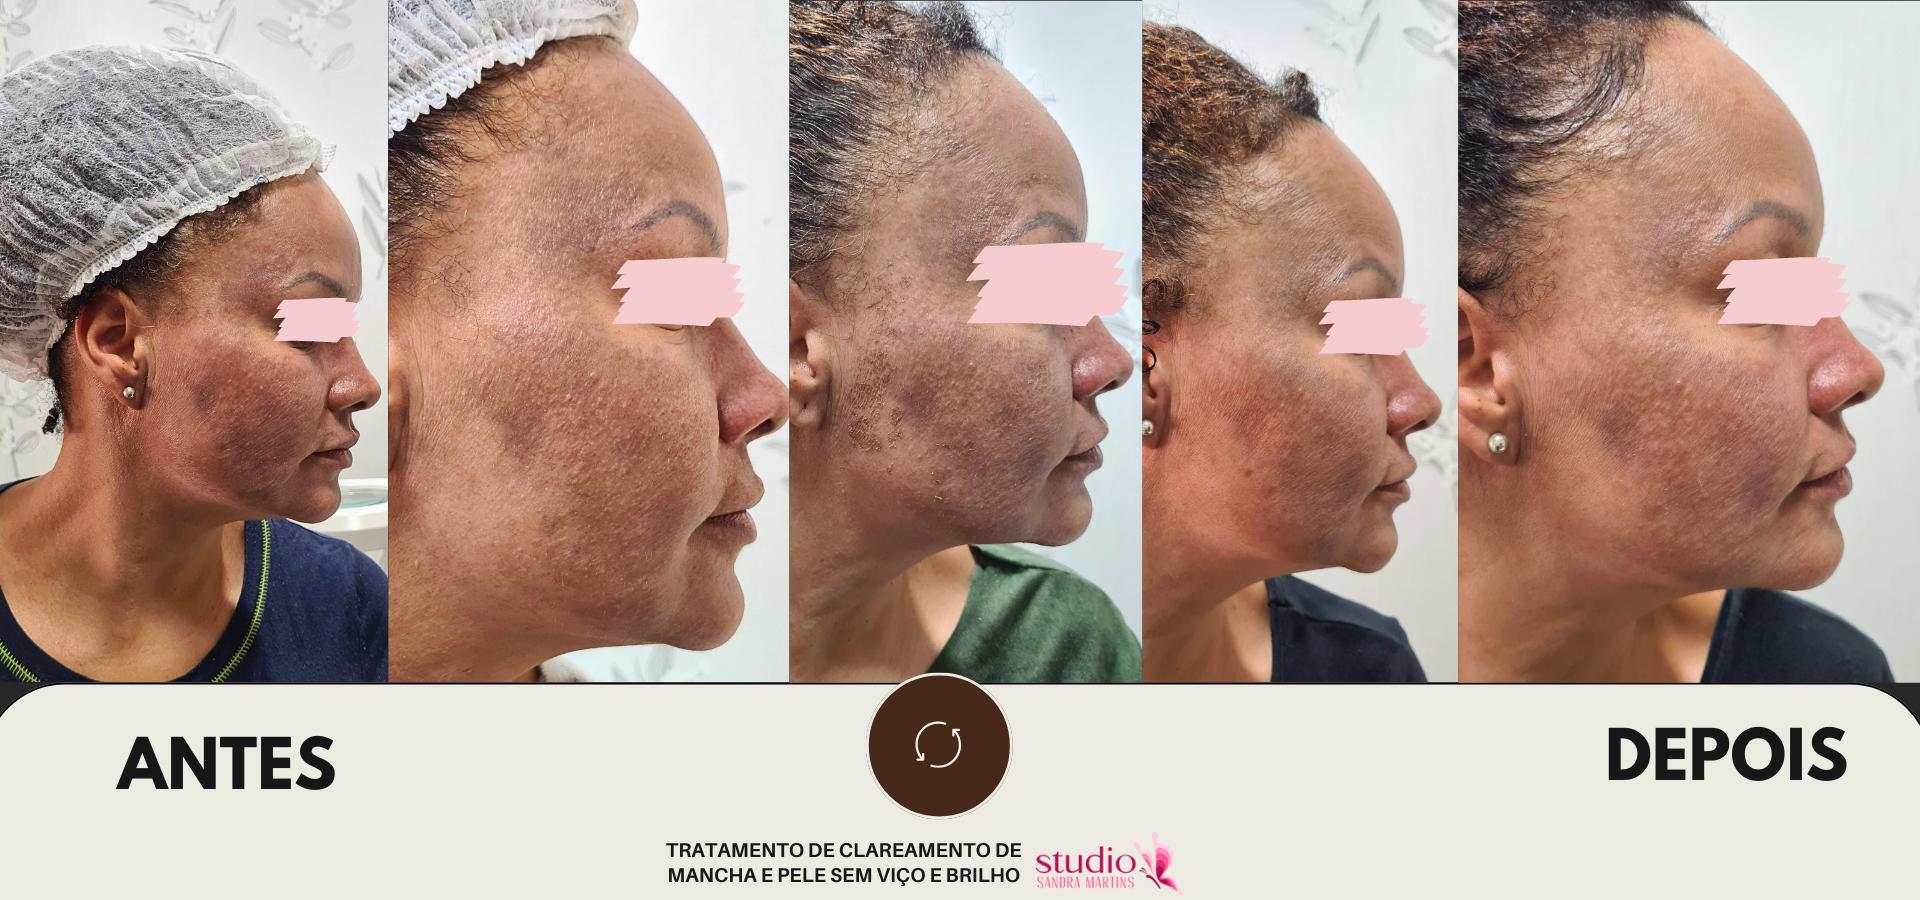 Microagulhamento antes e depois abril 26, 2024 Studio Sandra Martins de Estética Facial